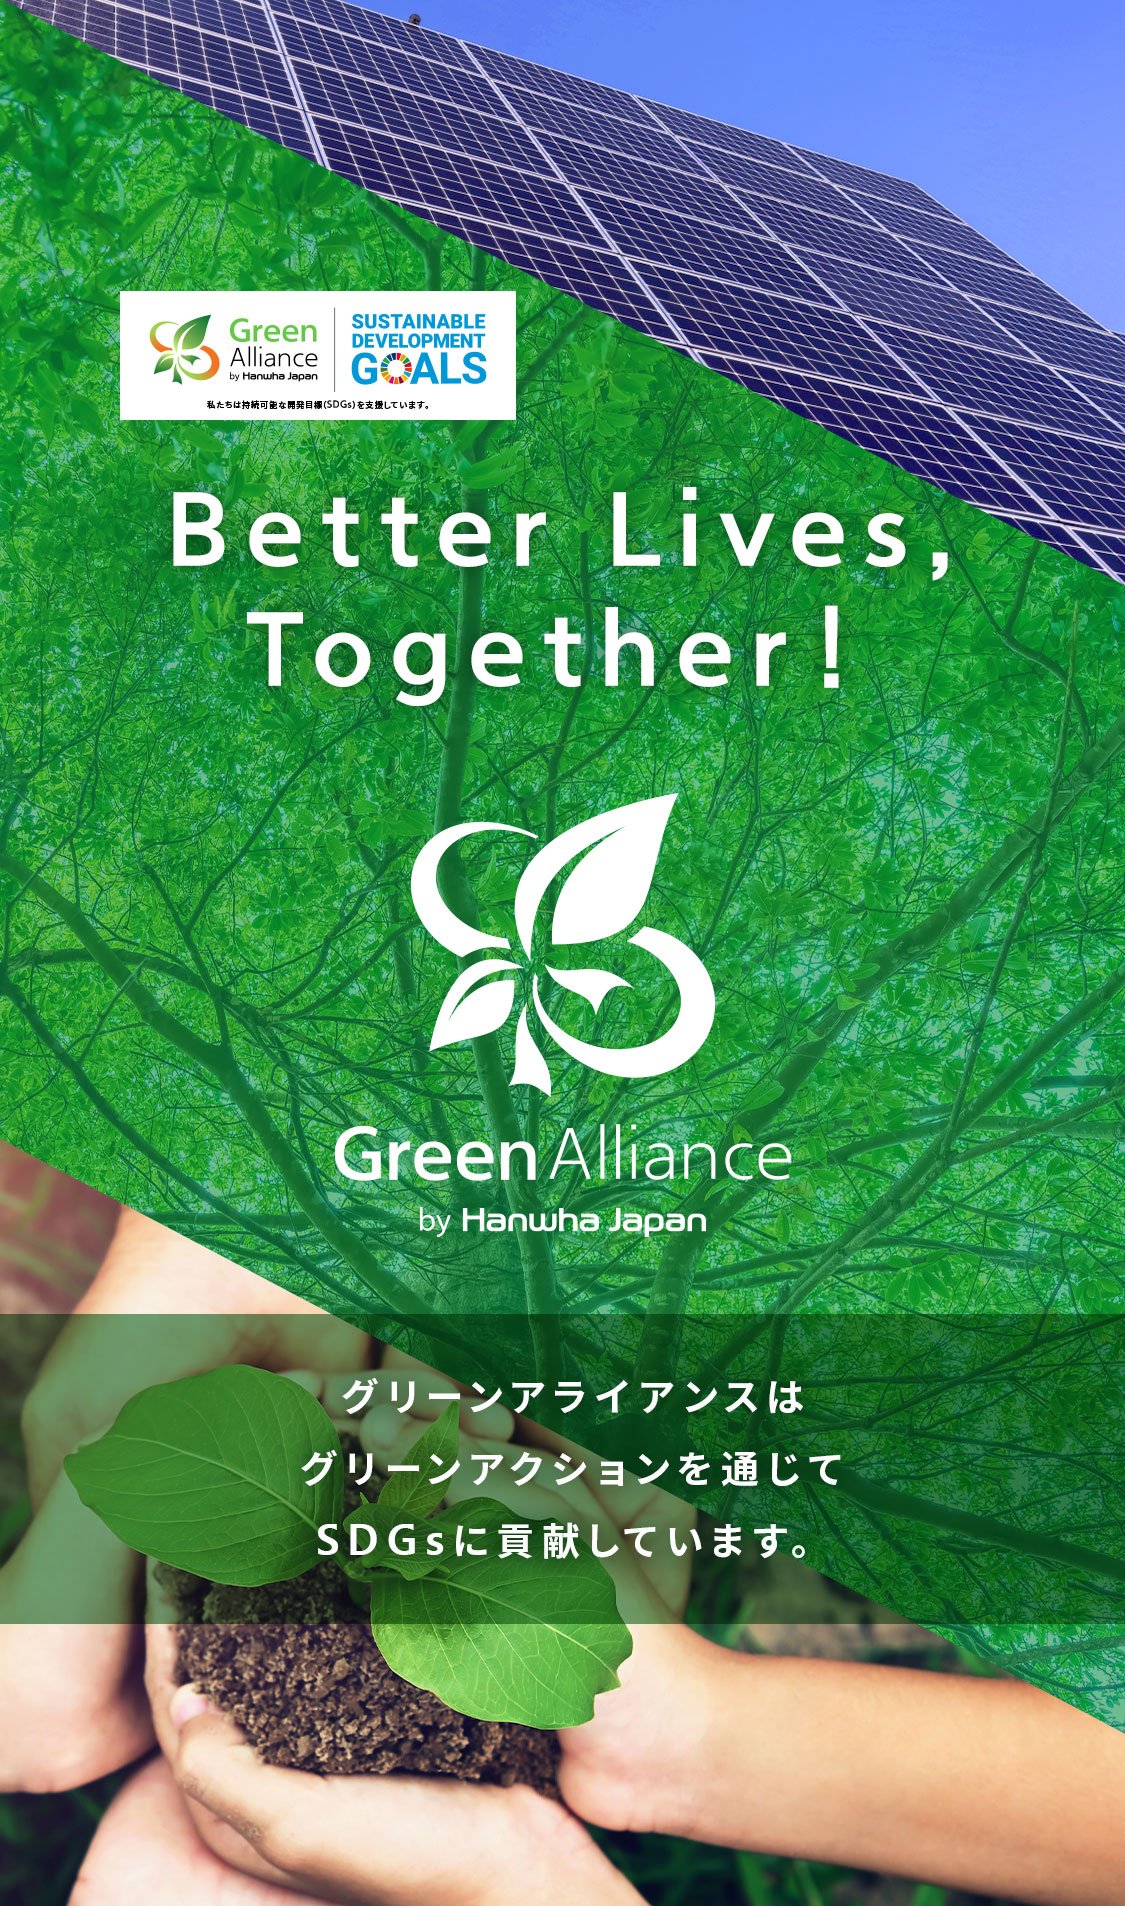 グリーンアライアンスはグリーンアクションを通じてSDGｓに貢献しています。